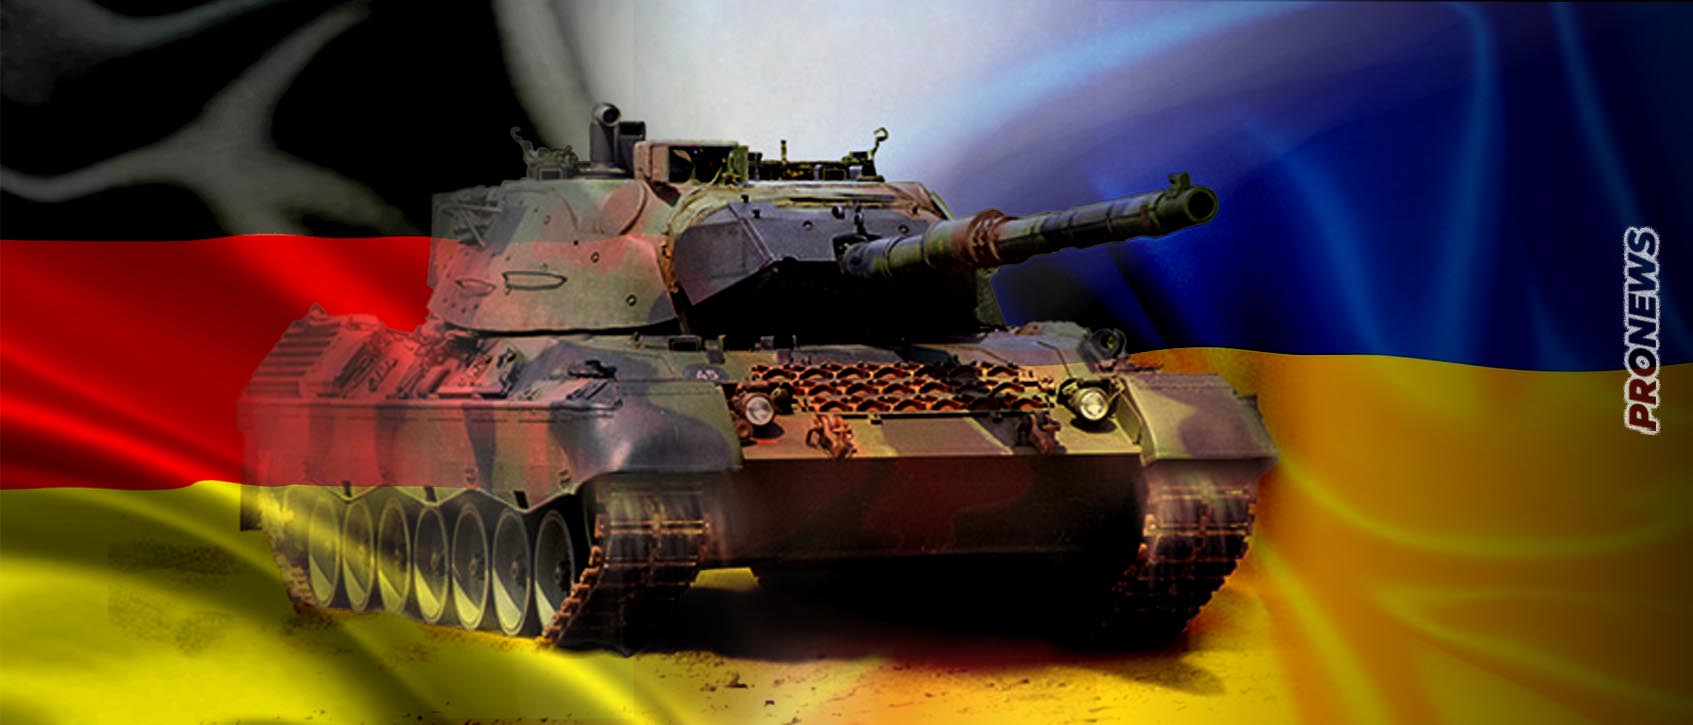  Απόφαση της Γερμανίας να παραδώσει και Leopard 1 στην Ουκρανία. Πρόκριμα και για τα ελληνικά Leopard.